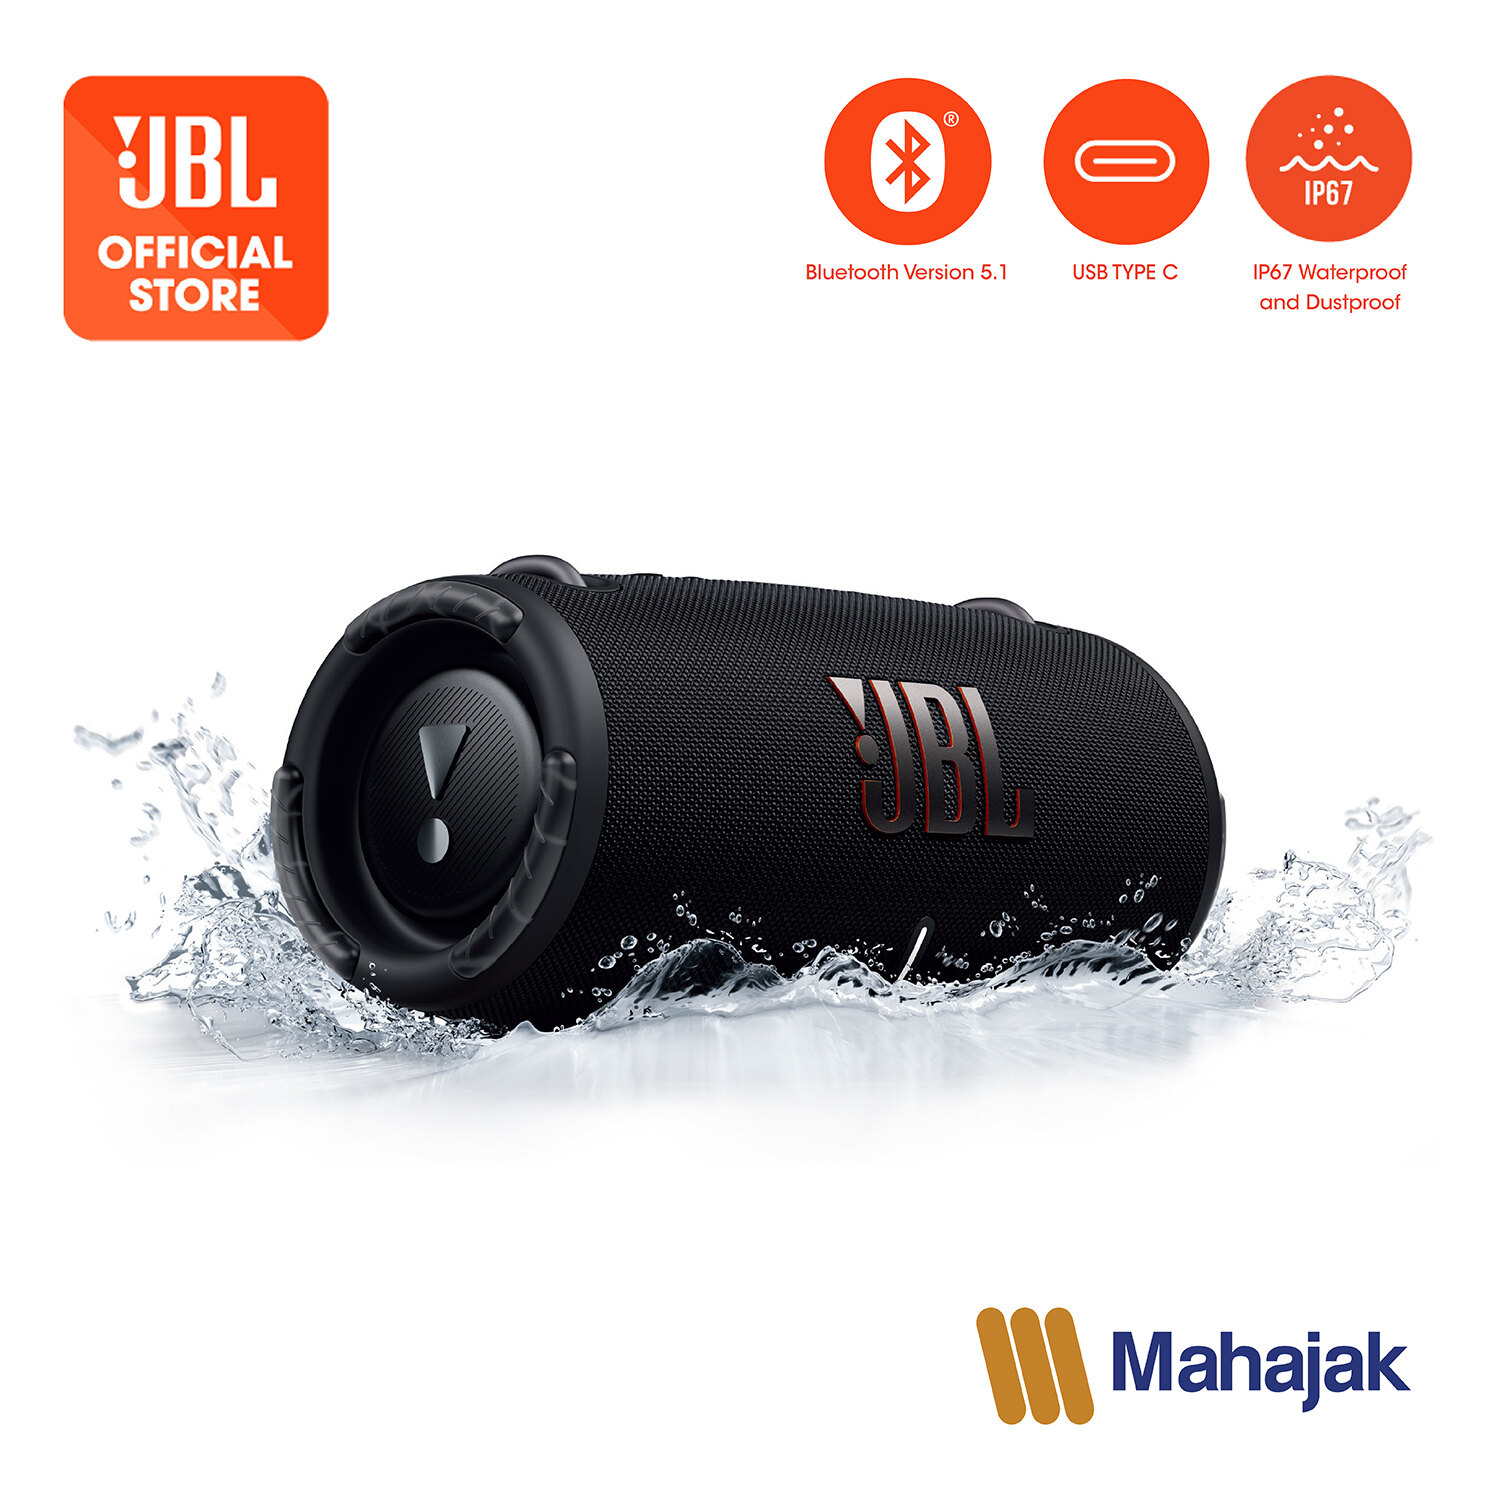 ลำโพงบลูทูธ JBL Xtreme 3 มาพร้อม Powerbank ในตัว  Portable waterproof speaker with Built-in Powerbank